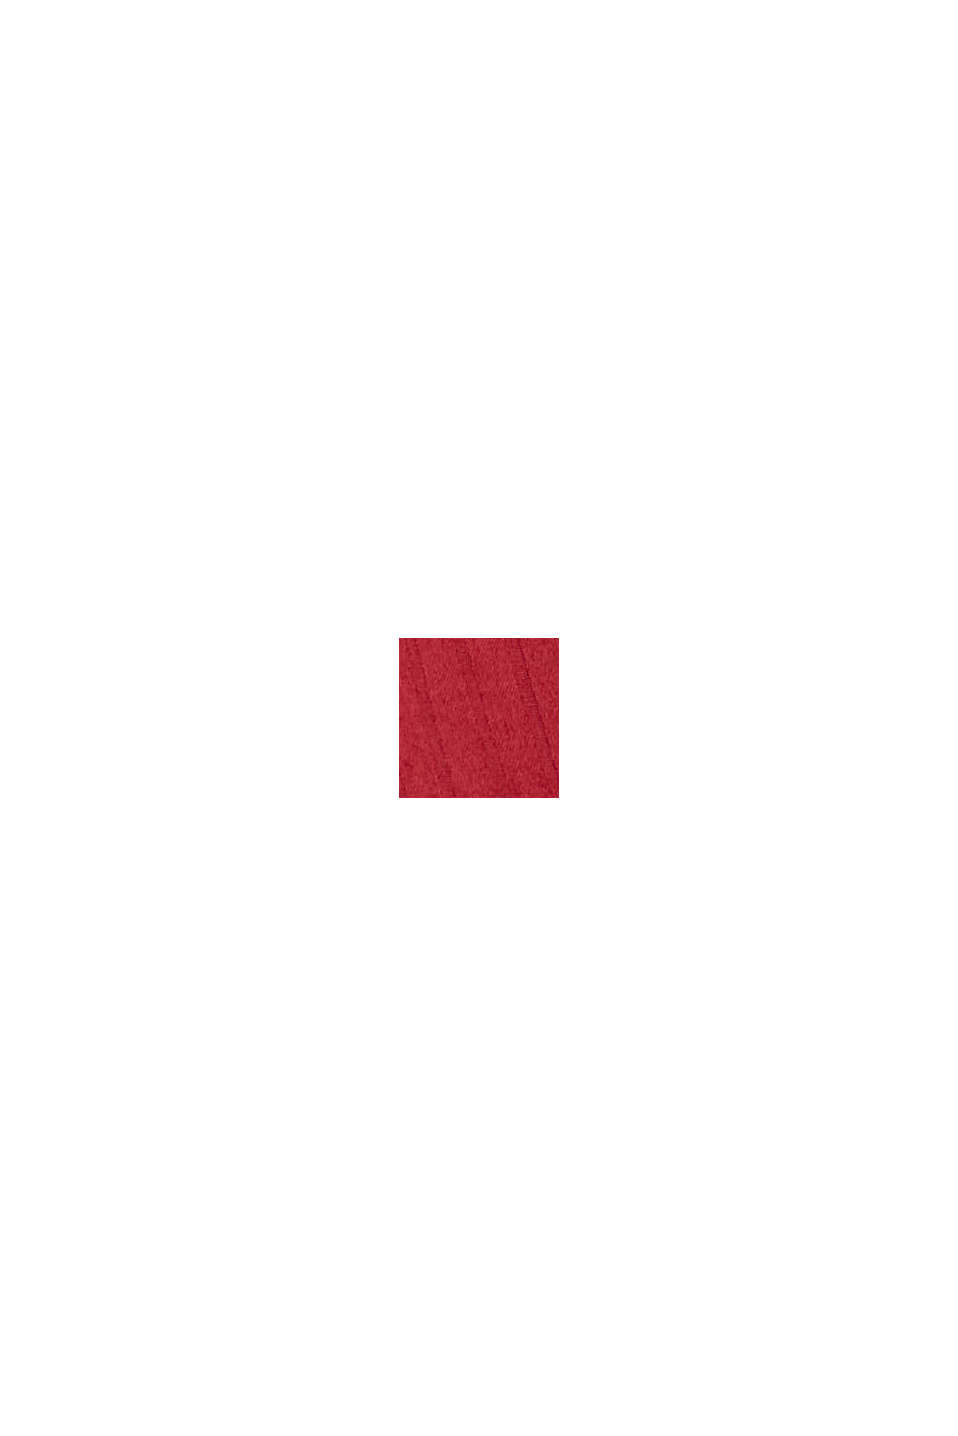 Nachthemd aus 100% Baumwolle, CHERRY RED, swatch